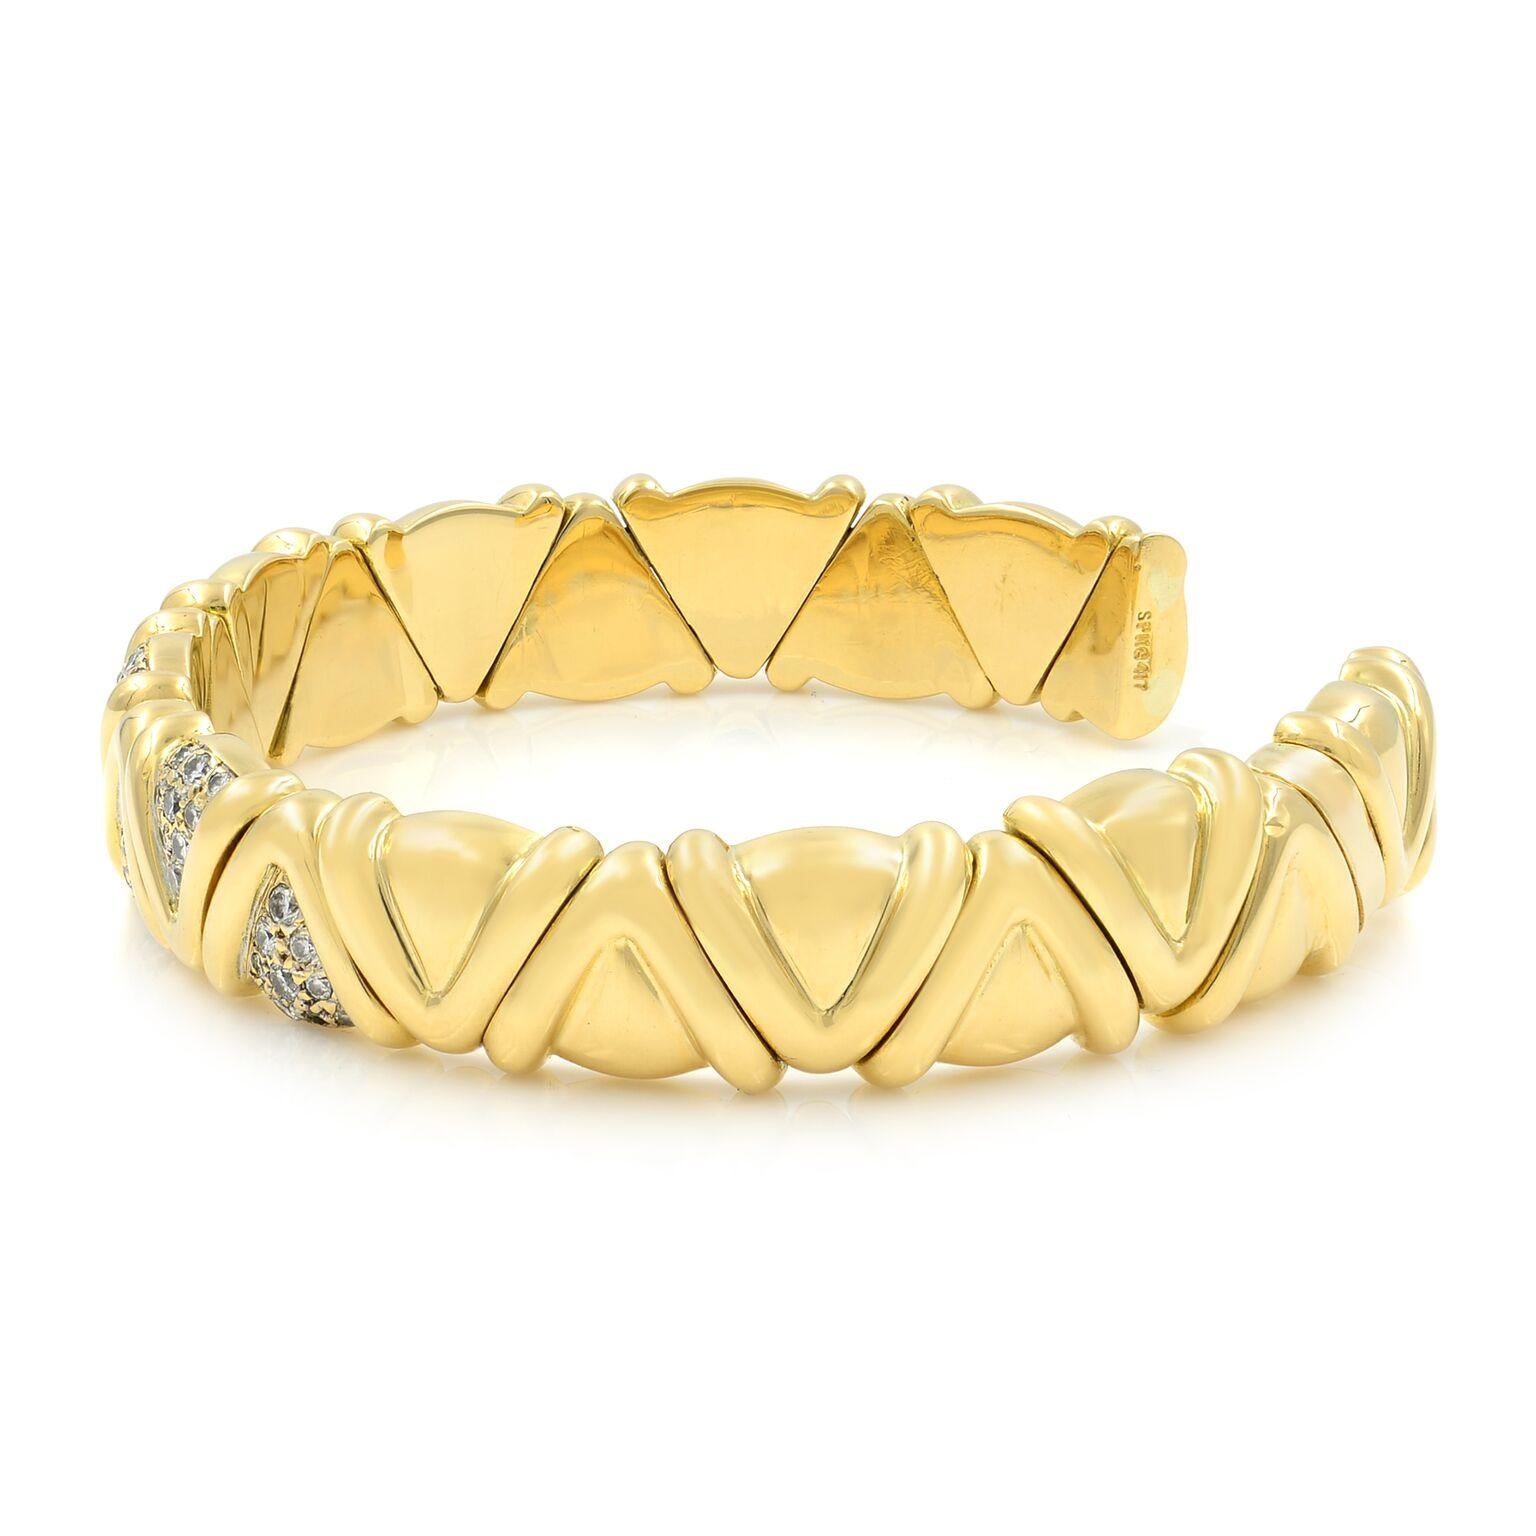 Un bracelet manchette Estate à la mode, réalisé en or jaune 18 carats massif. Ce bracelet présente un motif géométrique ajusté à l'avant de la bande avec des diamants ronds de taille brillante micro-pavés. Le poids total des diamants est de 1,00 ct.